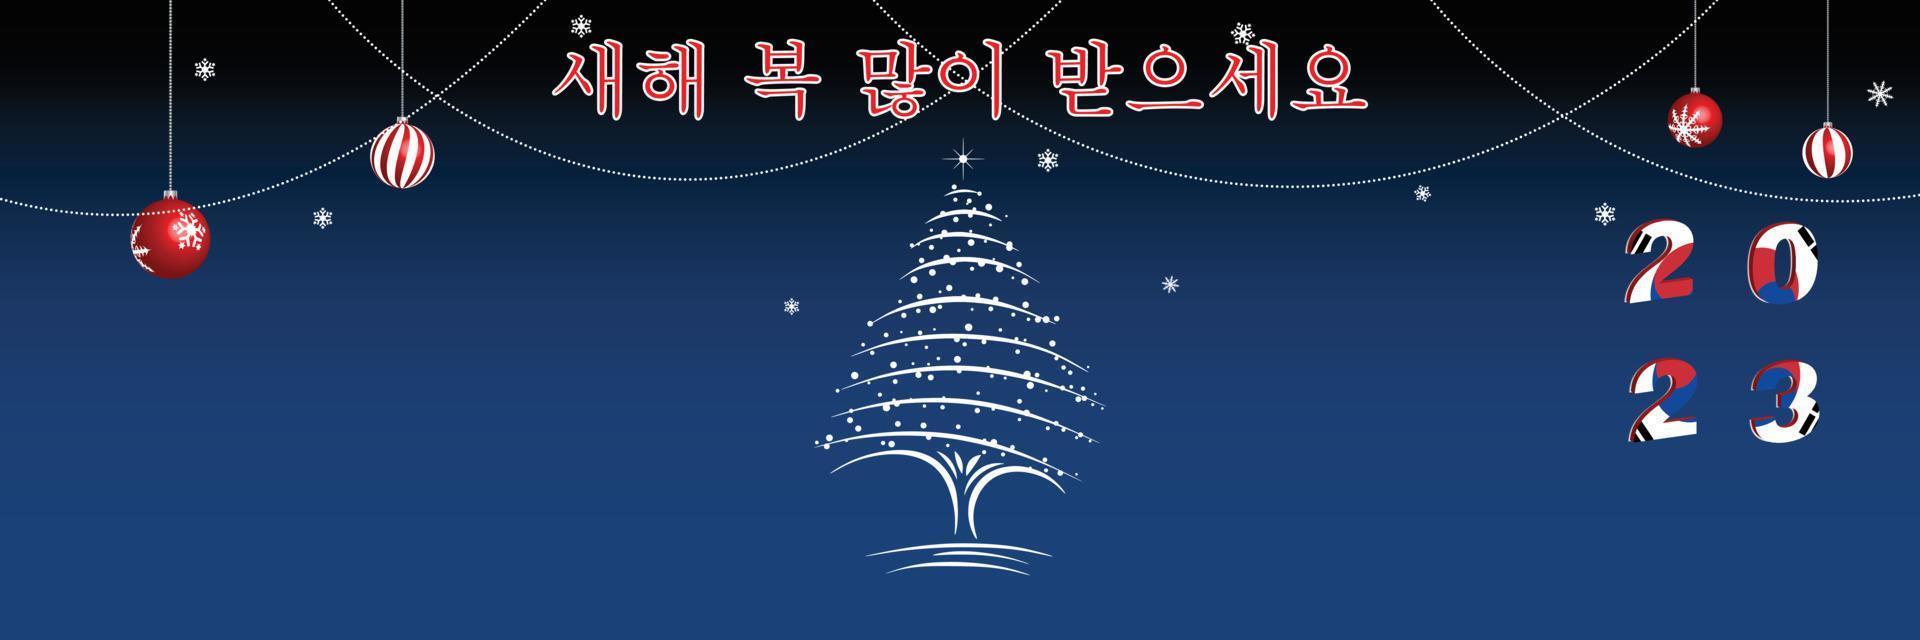 feliz navidad y próspero año nuevo portada de la página web. bandera de corea del sur en el año 2023. diseño de vacaciones para tarjeta de felicitación, pancarta, cartel de celebración, invitación de fiesta. ilustración vectorial vector